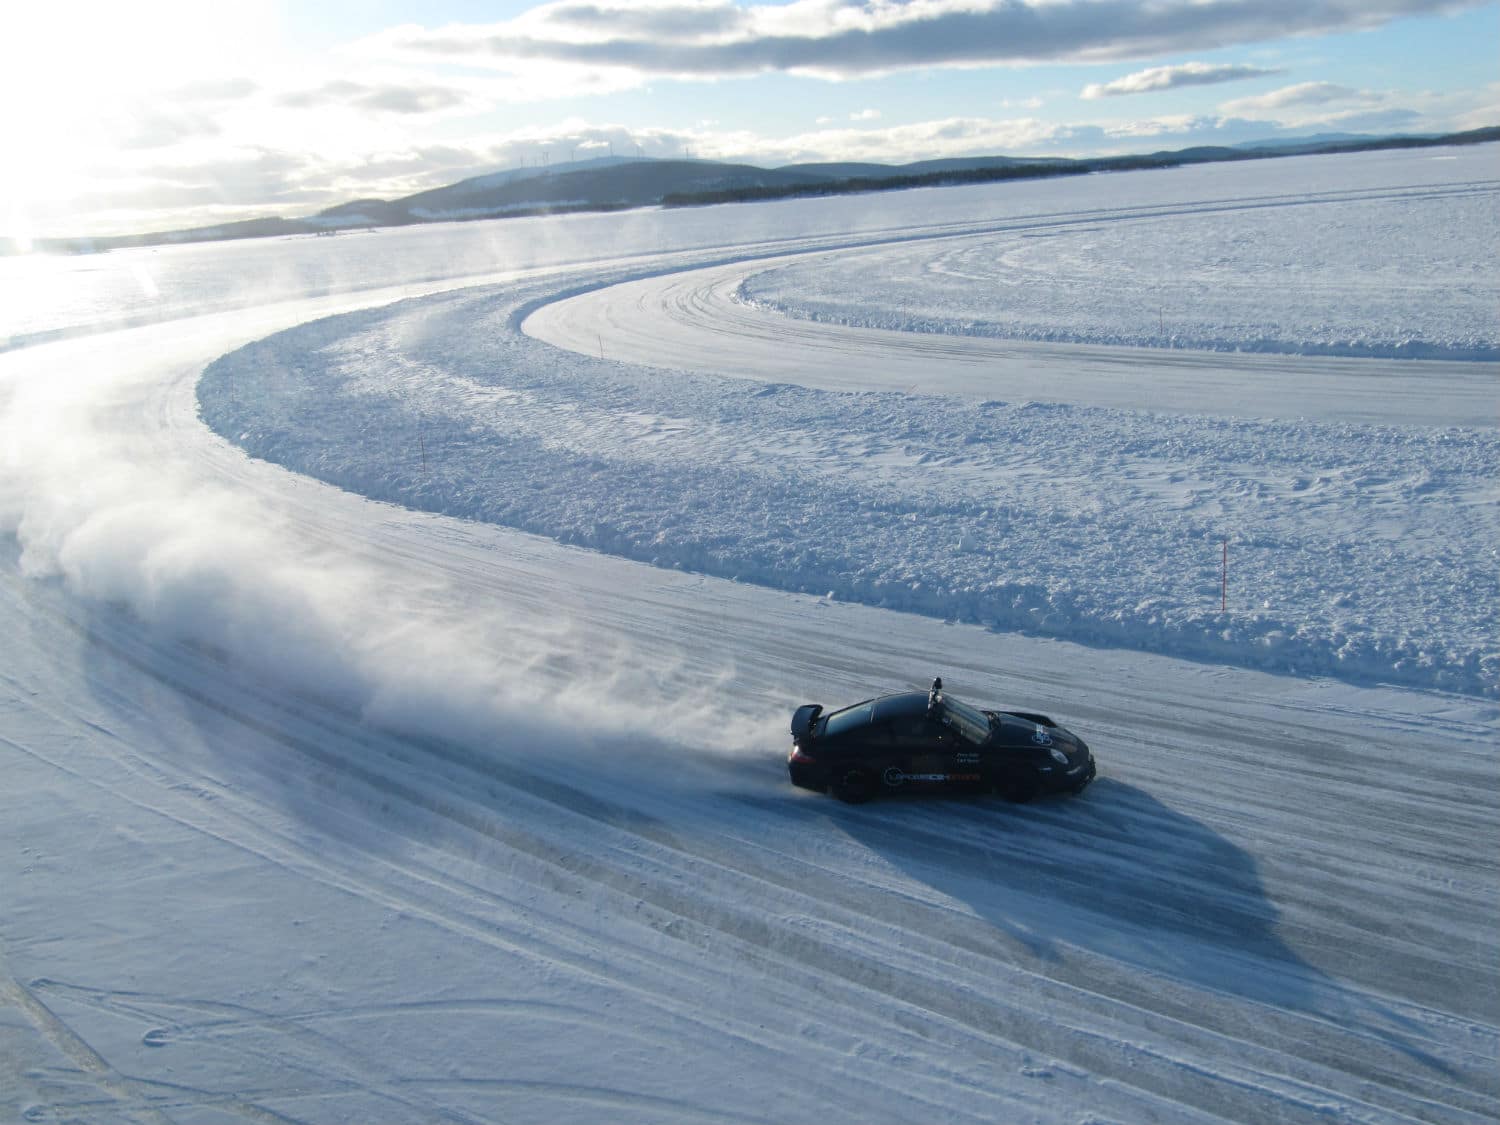 Lire la suite à propos de l’article Conduite sur glace en Laponie …. Sensations fortes assurées !